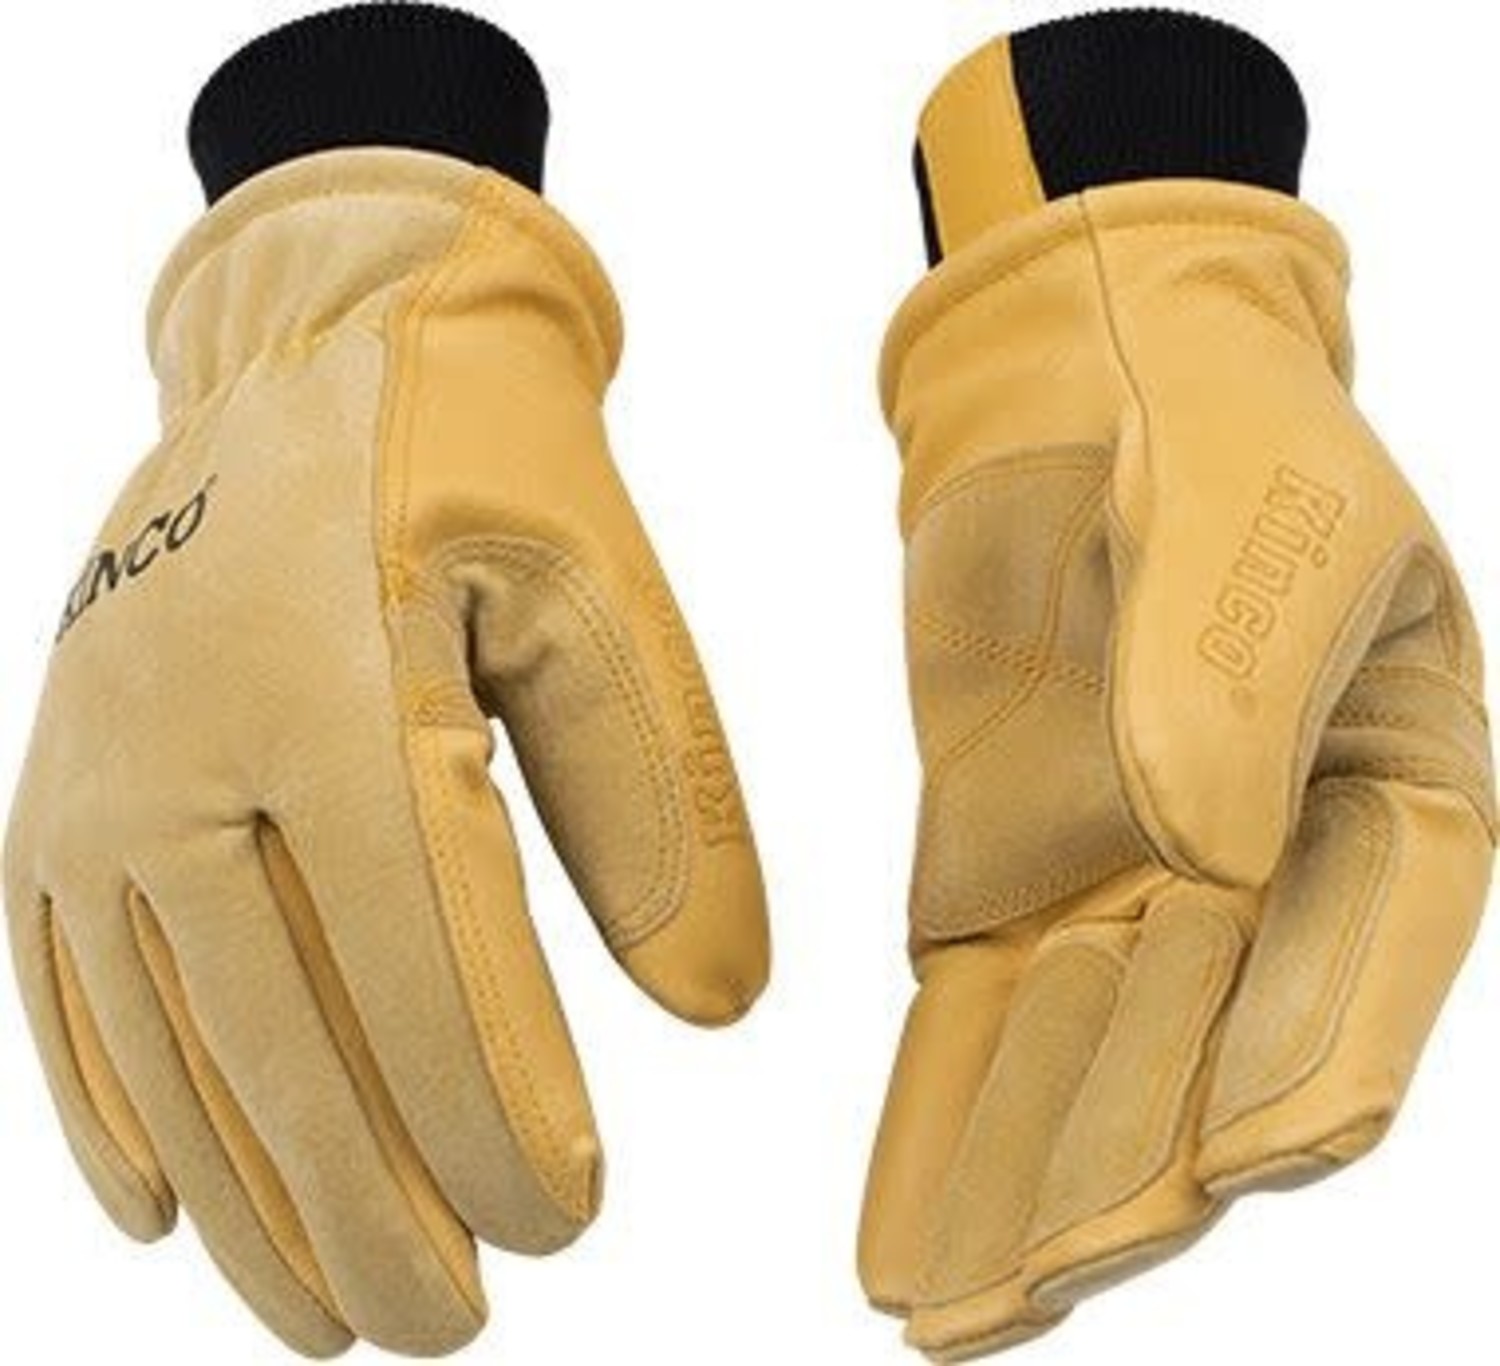 KINCO Men's Lined Pig Skin Gloves - Edge of the World